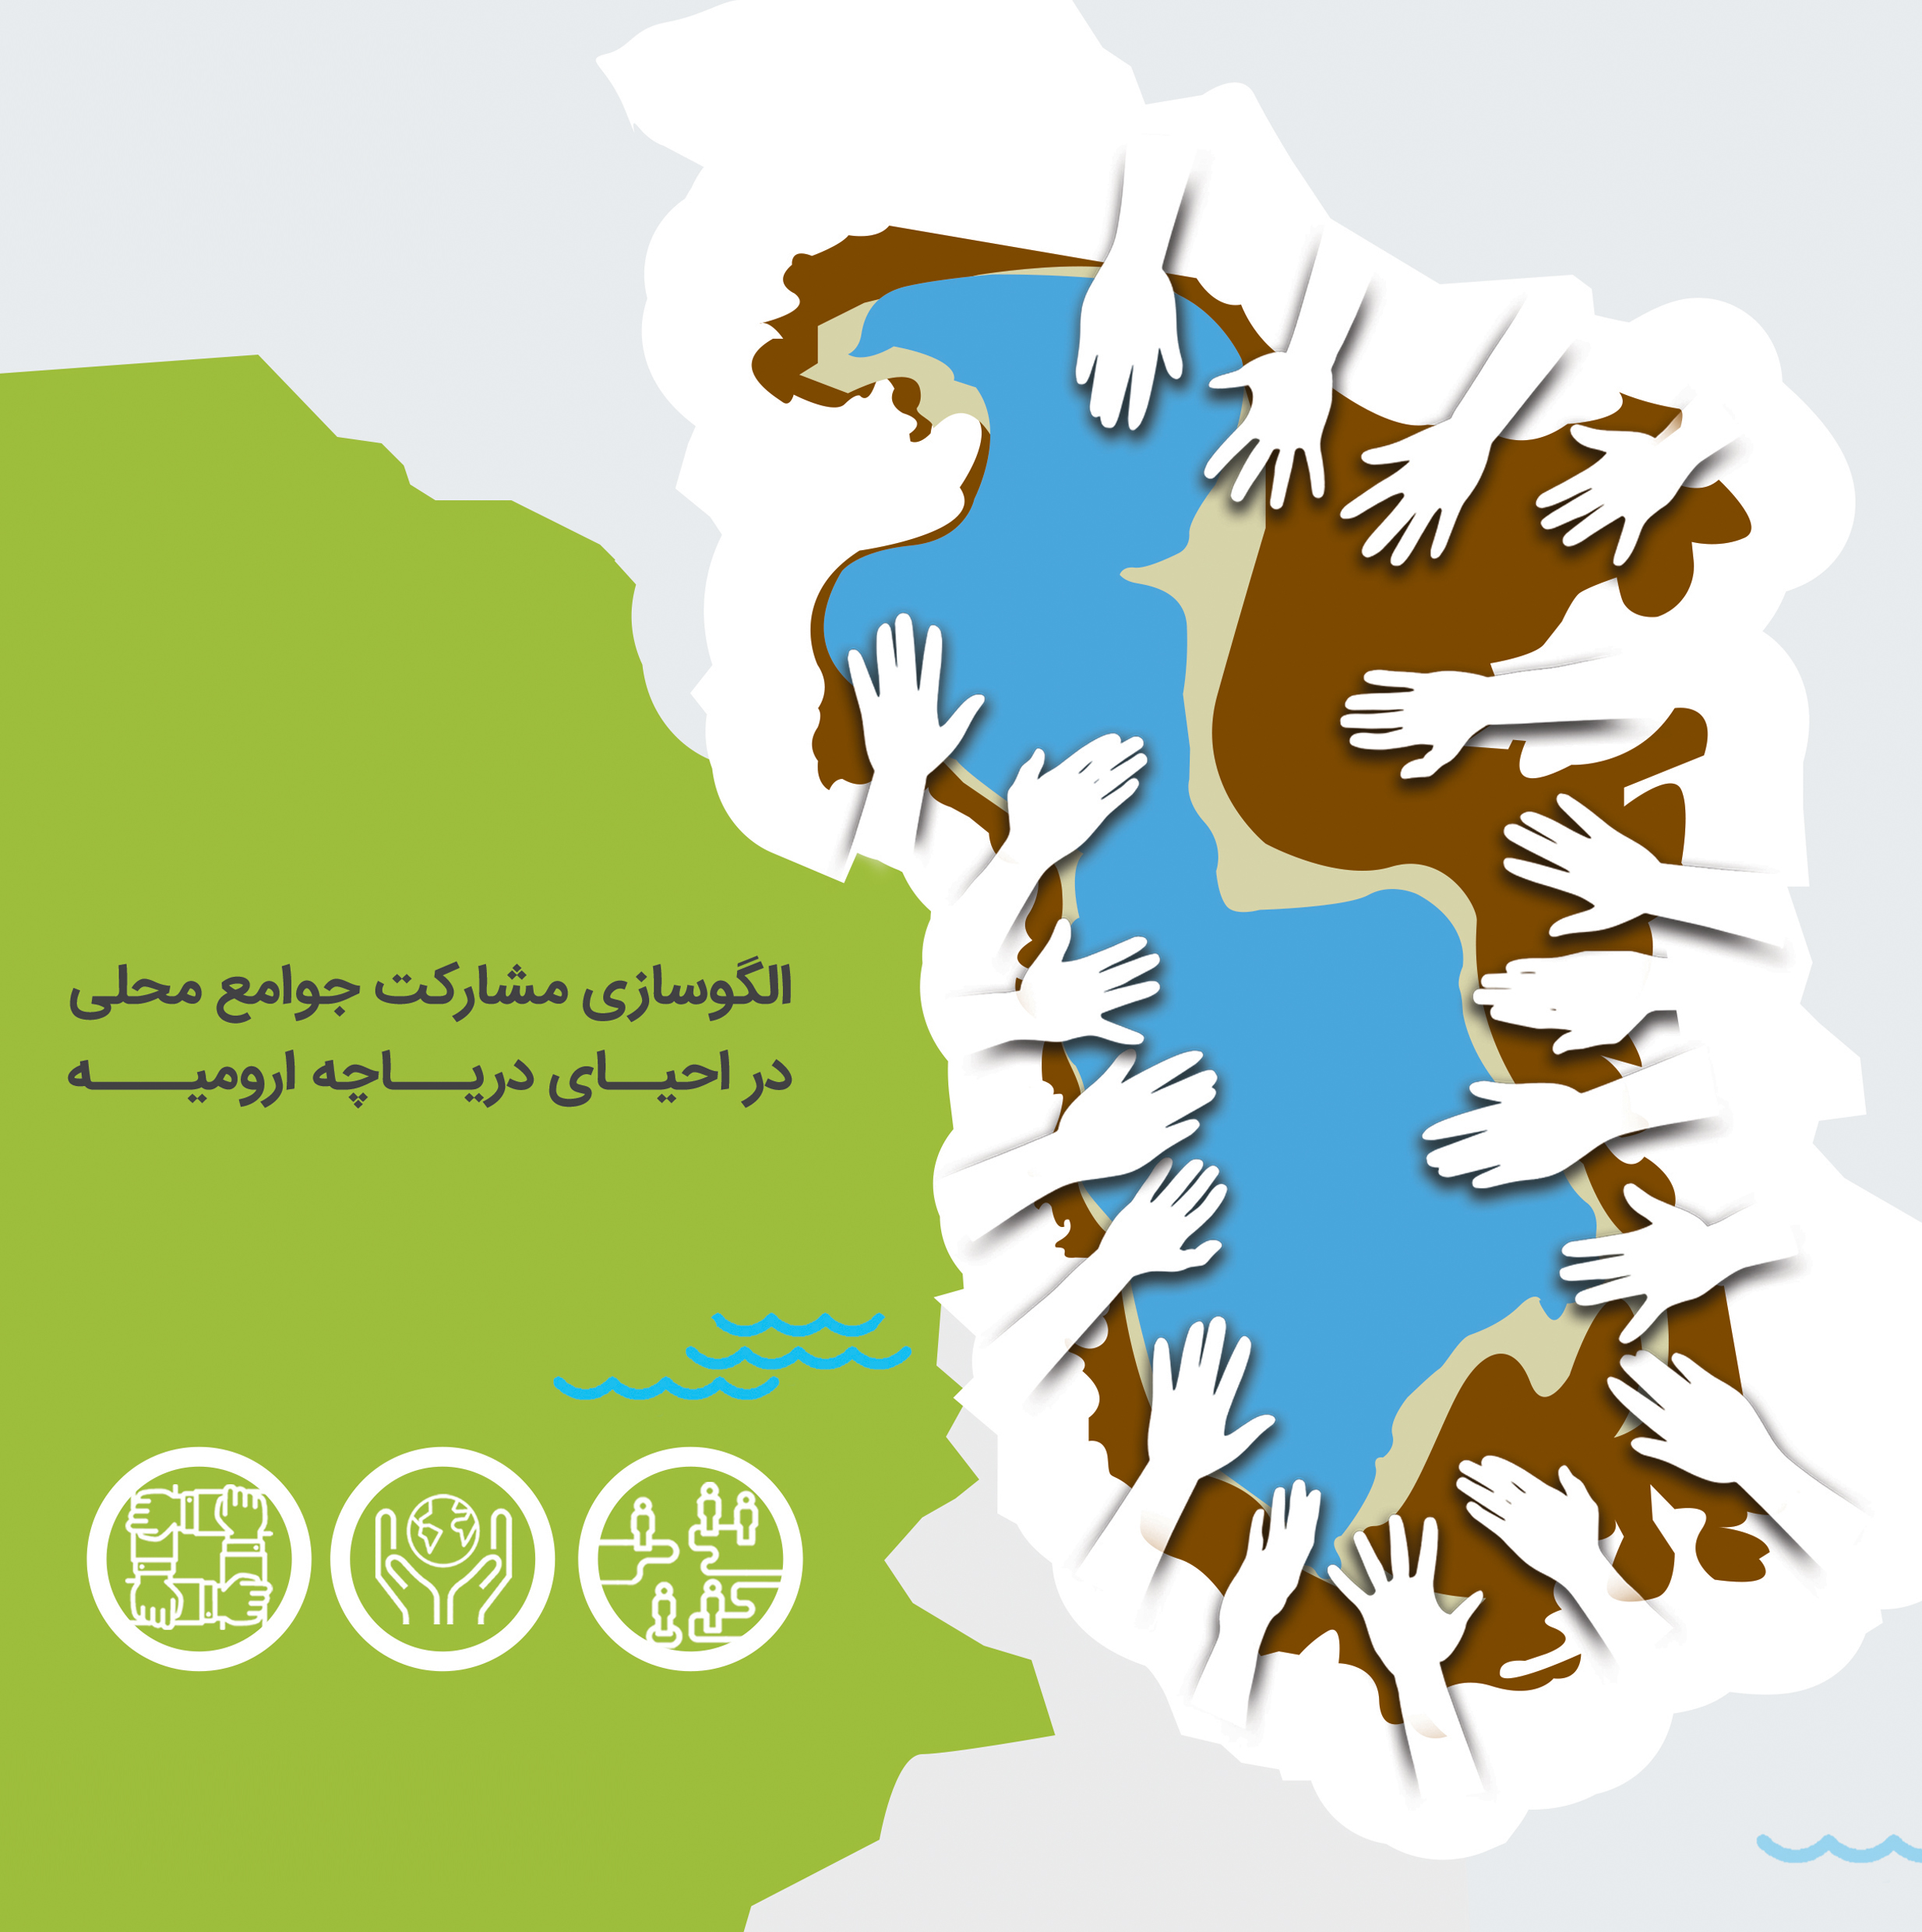 کتابچه الگوسازی مشارکت جوامع محلی در احیای دریاچه ارومیه (دو زبانه فارسی و انگلیسی)